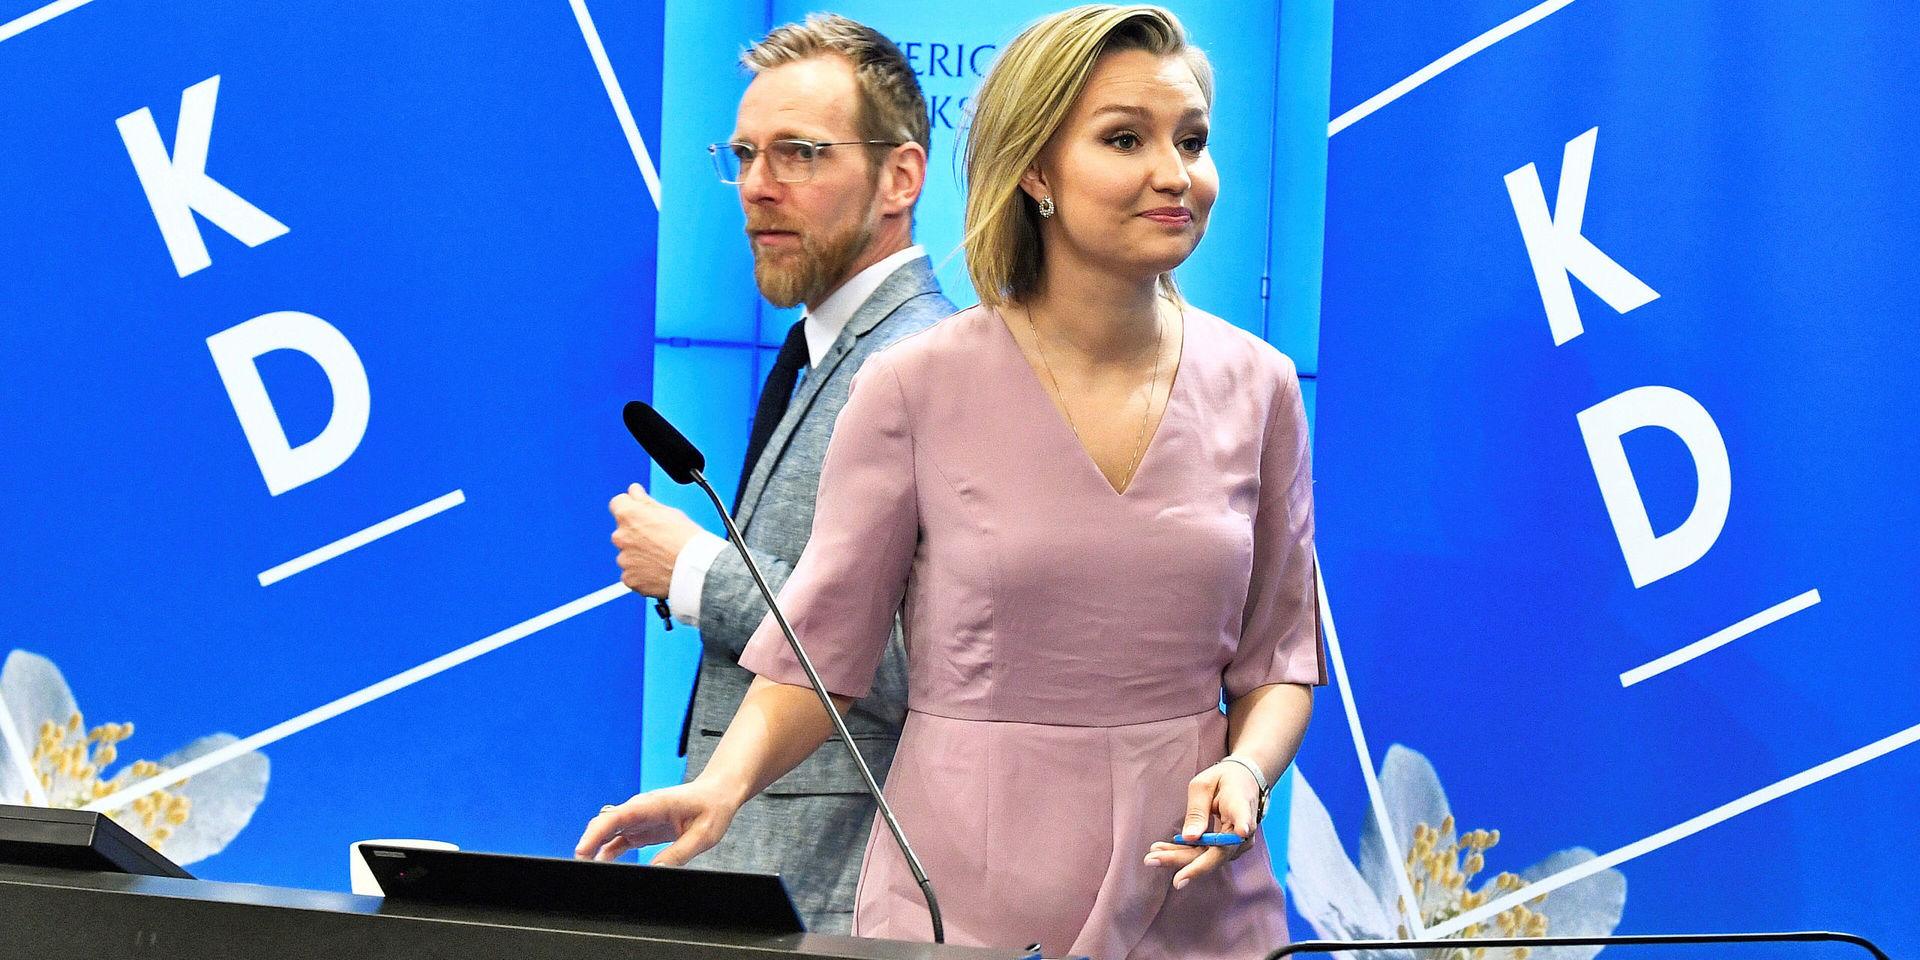 KD-positionen är svårbegriplig. Här partiets ekonomisk-politiske talesperson Jakob Forssmed och partiledaren Ebba Busch Thor.